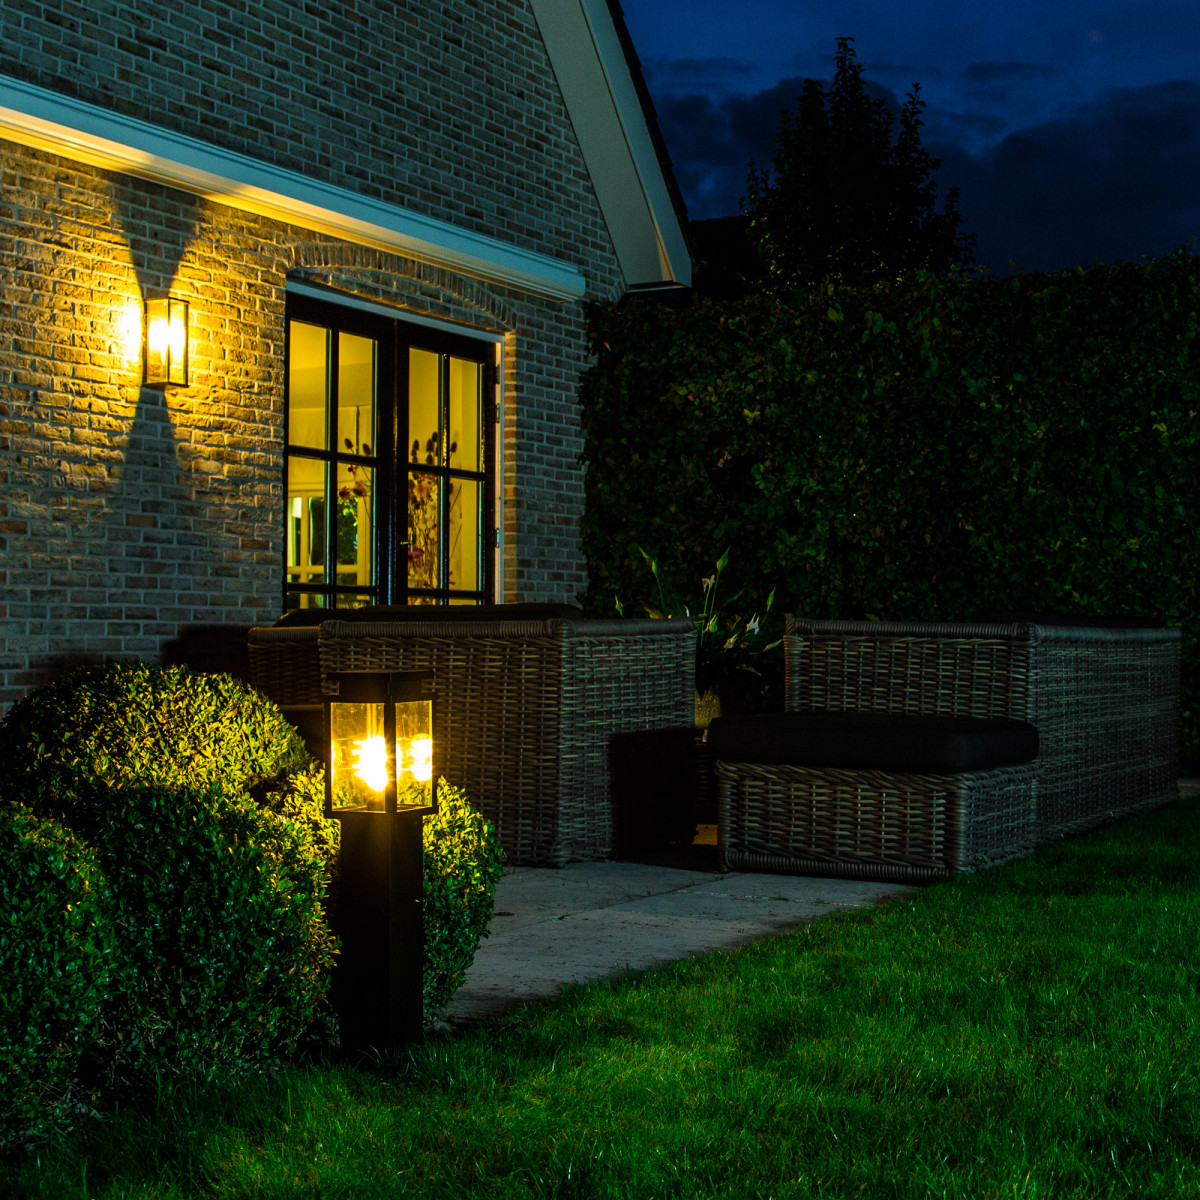 tuinverlichting, tuinlamp jersey terras lantaarn stijlvol strak klassieke tuinlamp een originele buitenverlichting van KS Verlichting